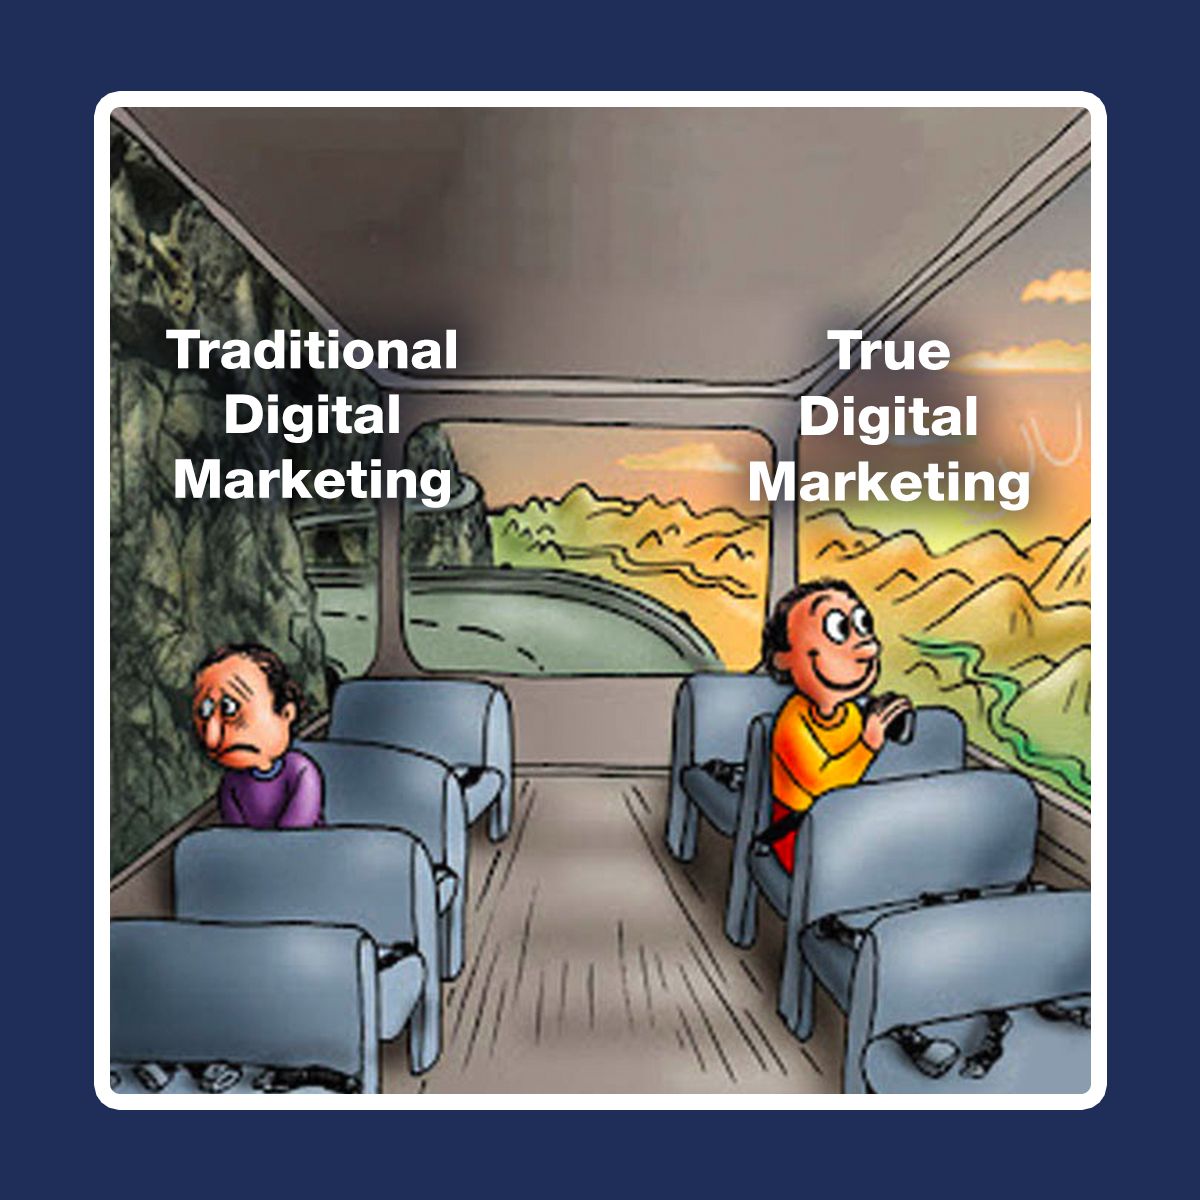 Traditional Digital Marketing Vs. True Digital Marketing